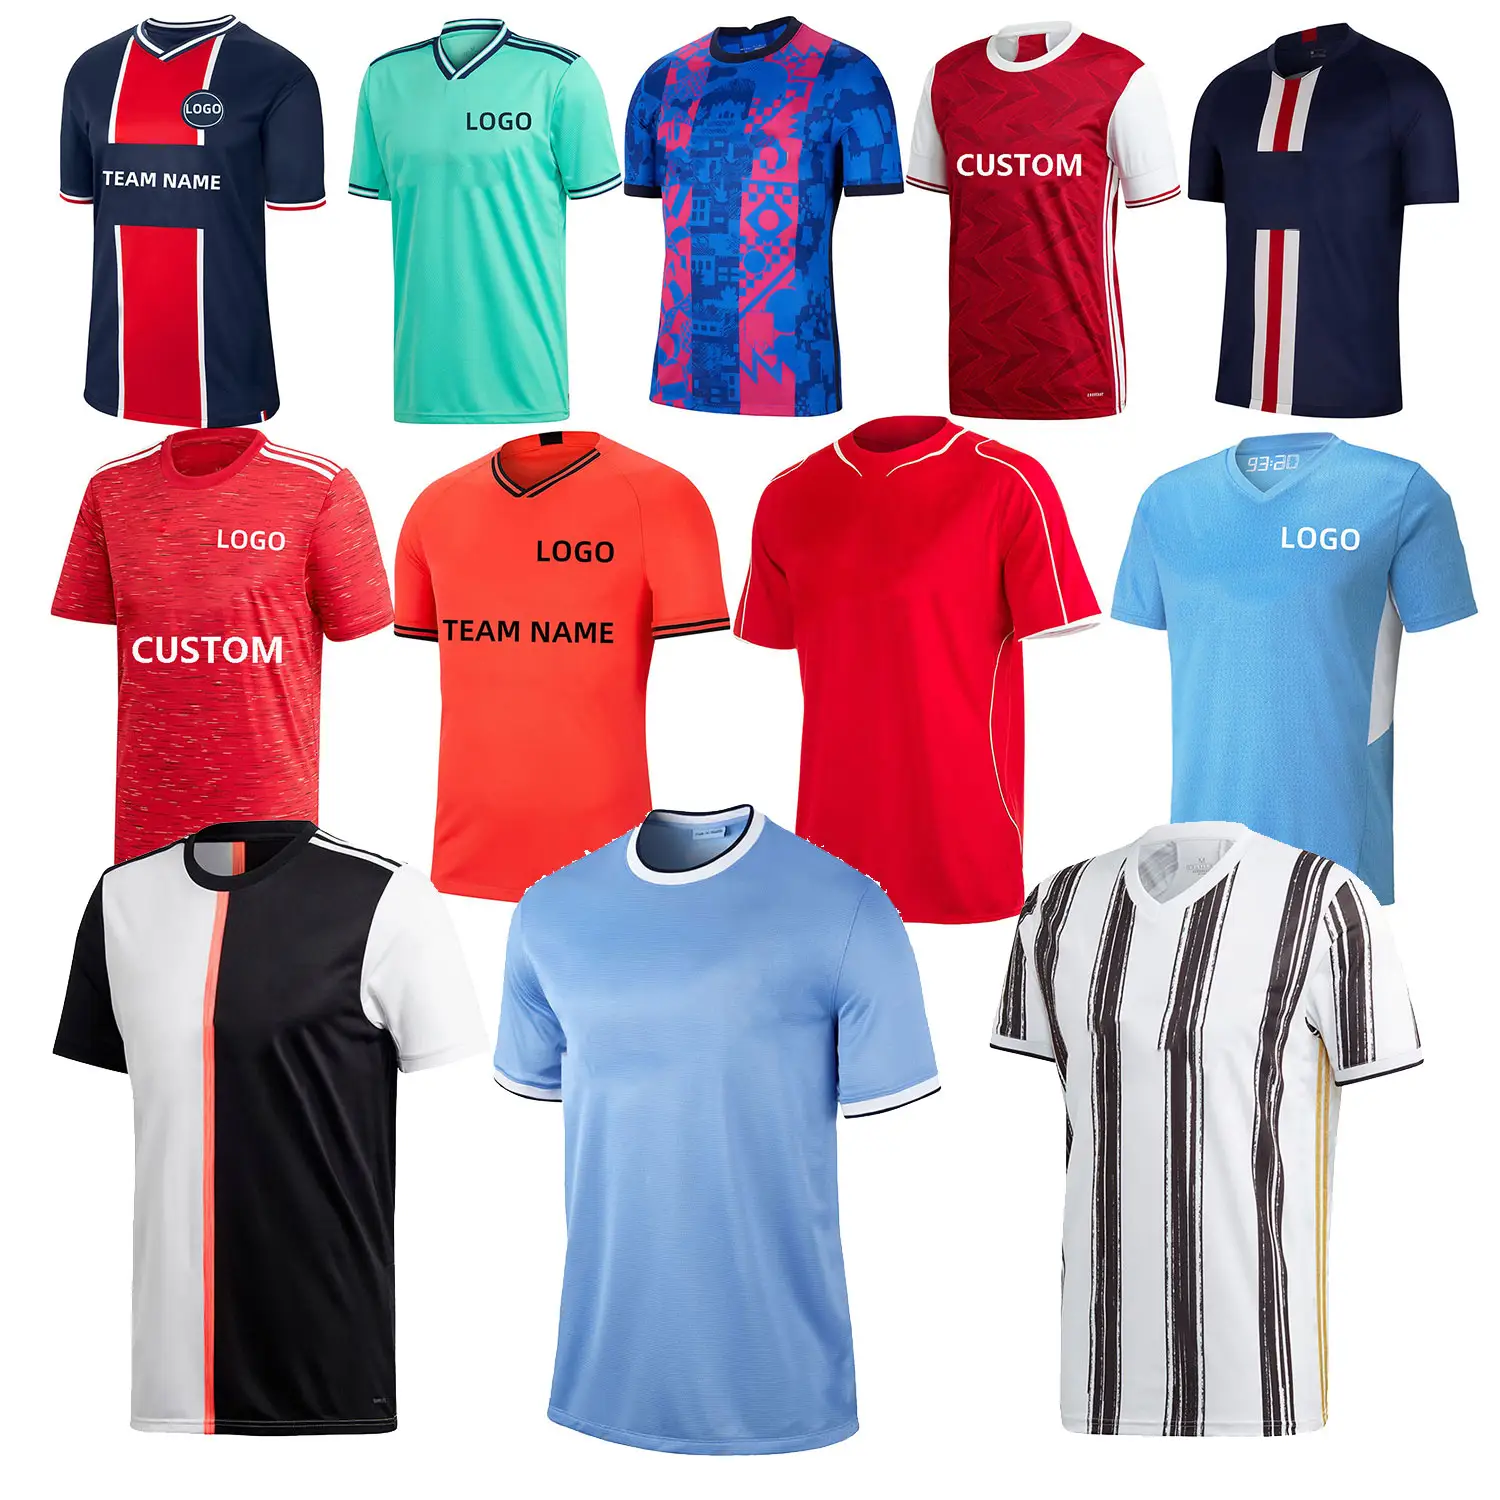 LUSON Neue sublimierte Fußball trikots Europäisches Fußball trikot Junior Uniform Designs Herren Fußball Fußball bekleidung